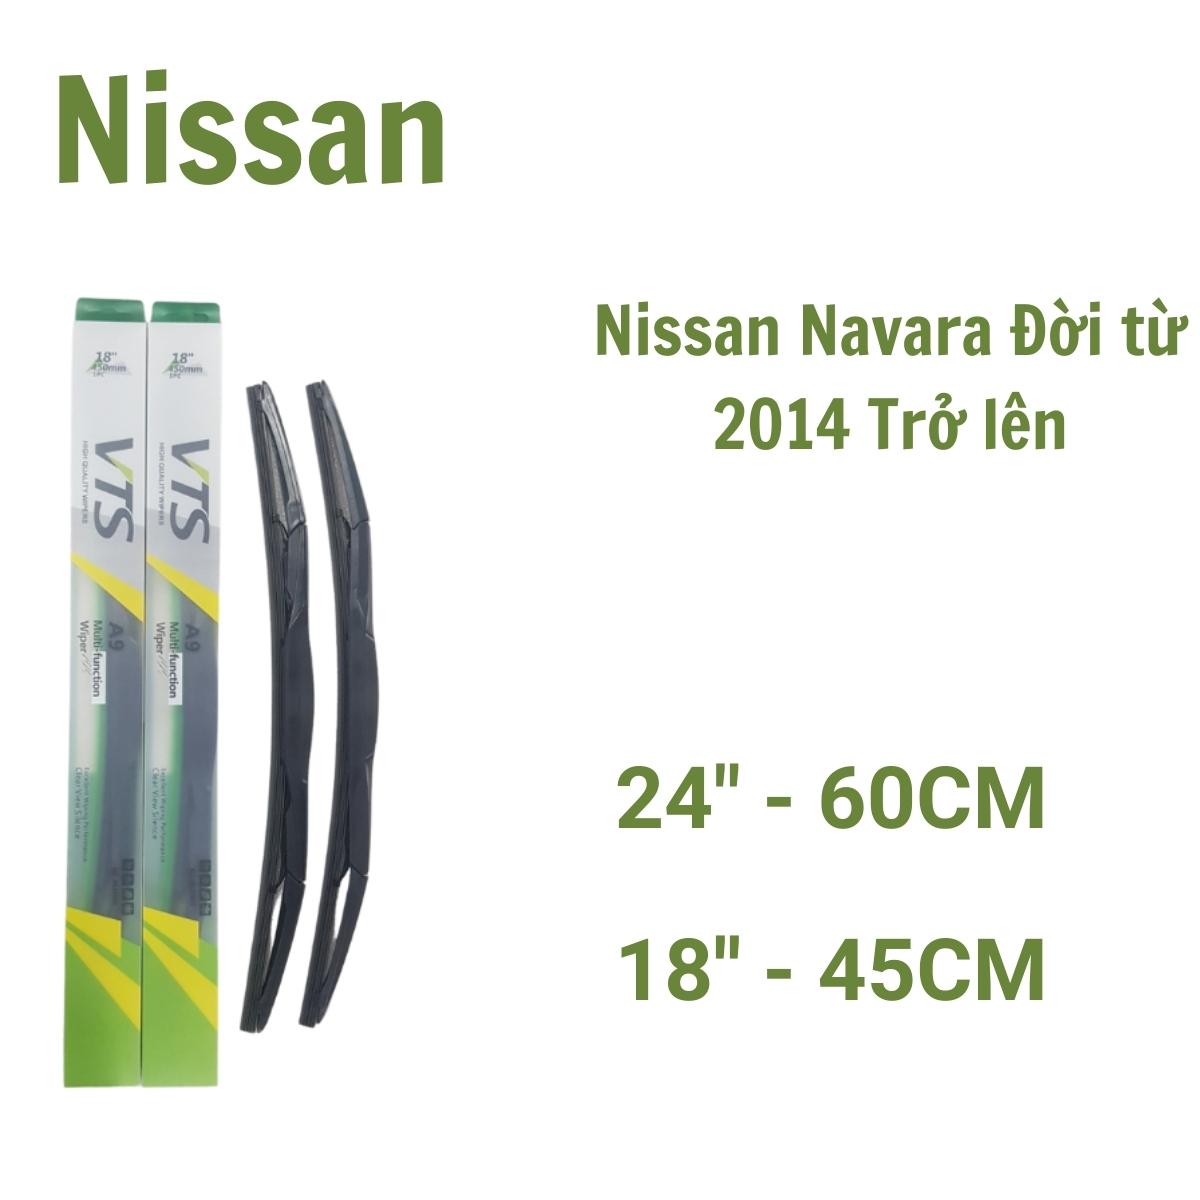 Cần gạt mưa ô tô Silicon thanh 3 khúc A9 dành cho xe Nissan:Juke, Micra, Qashai và các hãng xe khác của Nissan - Hàng nhập khẩu